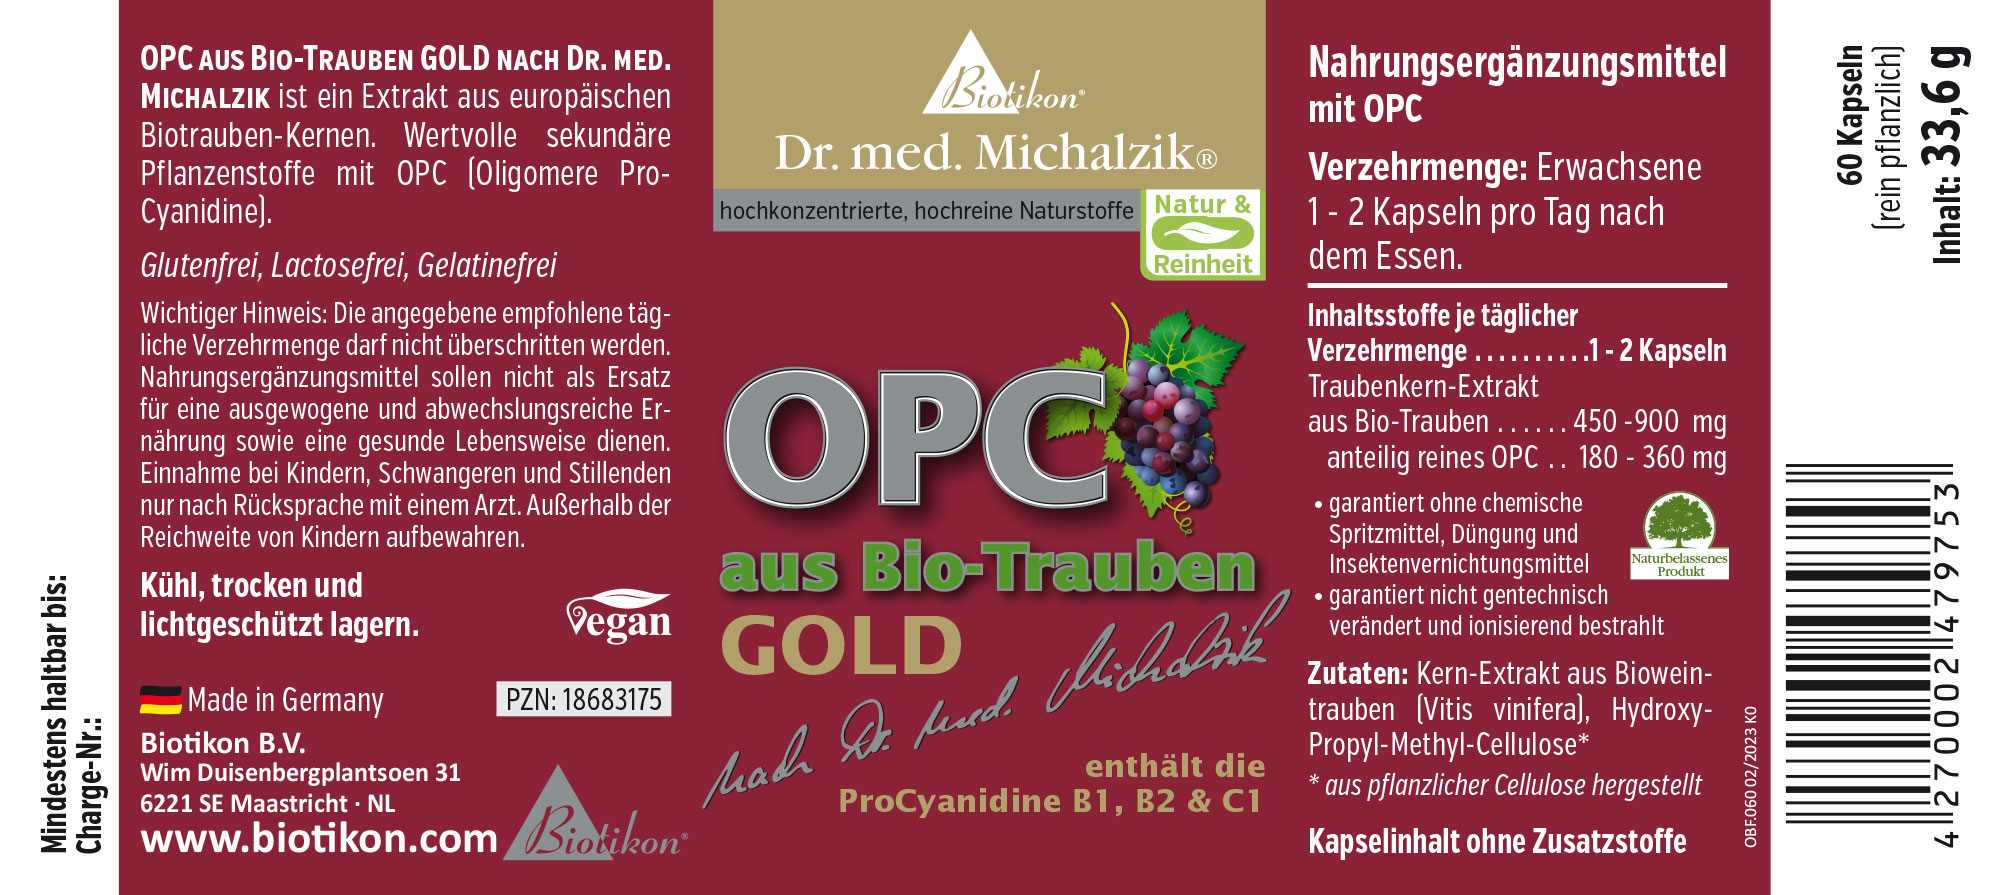 OPC aus Bio-Trauben GOLD